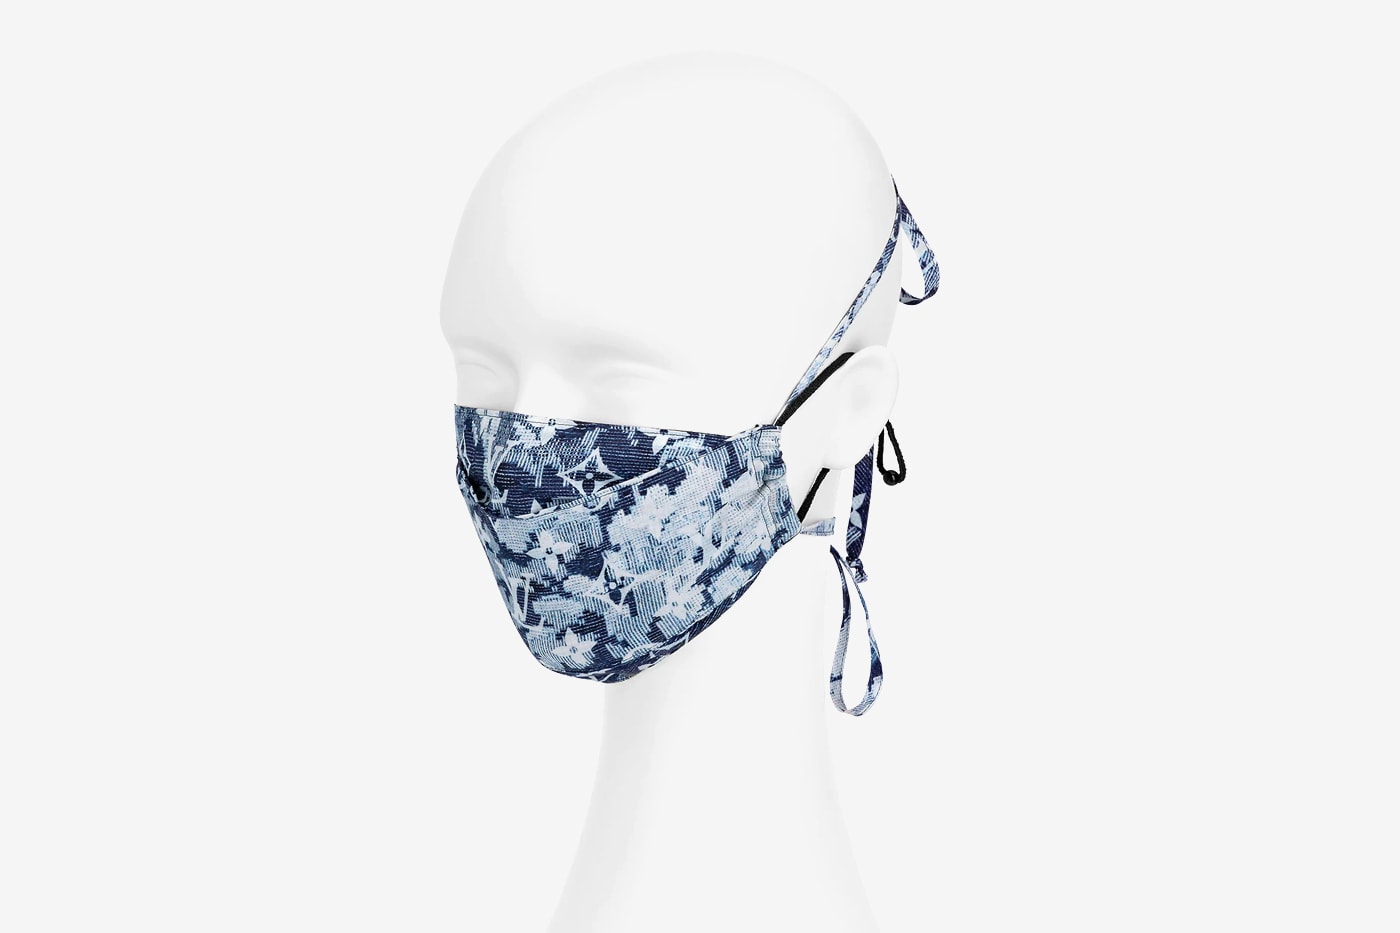 ルイ・ヴィトンがモノグラム柄のバンダナとマスクのセットをリリース Louis Vuitton Releases $500 USD Bandana and Mask Set